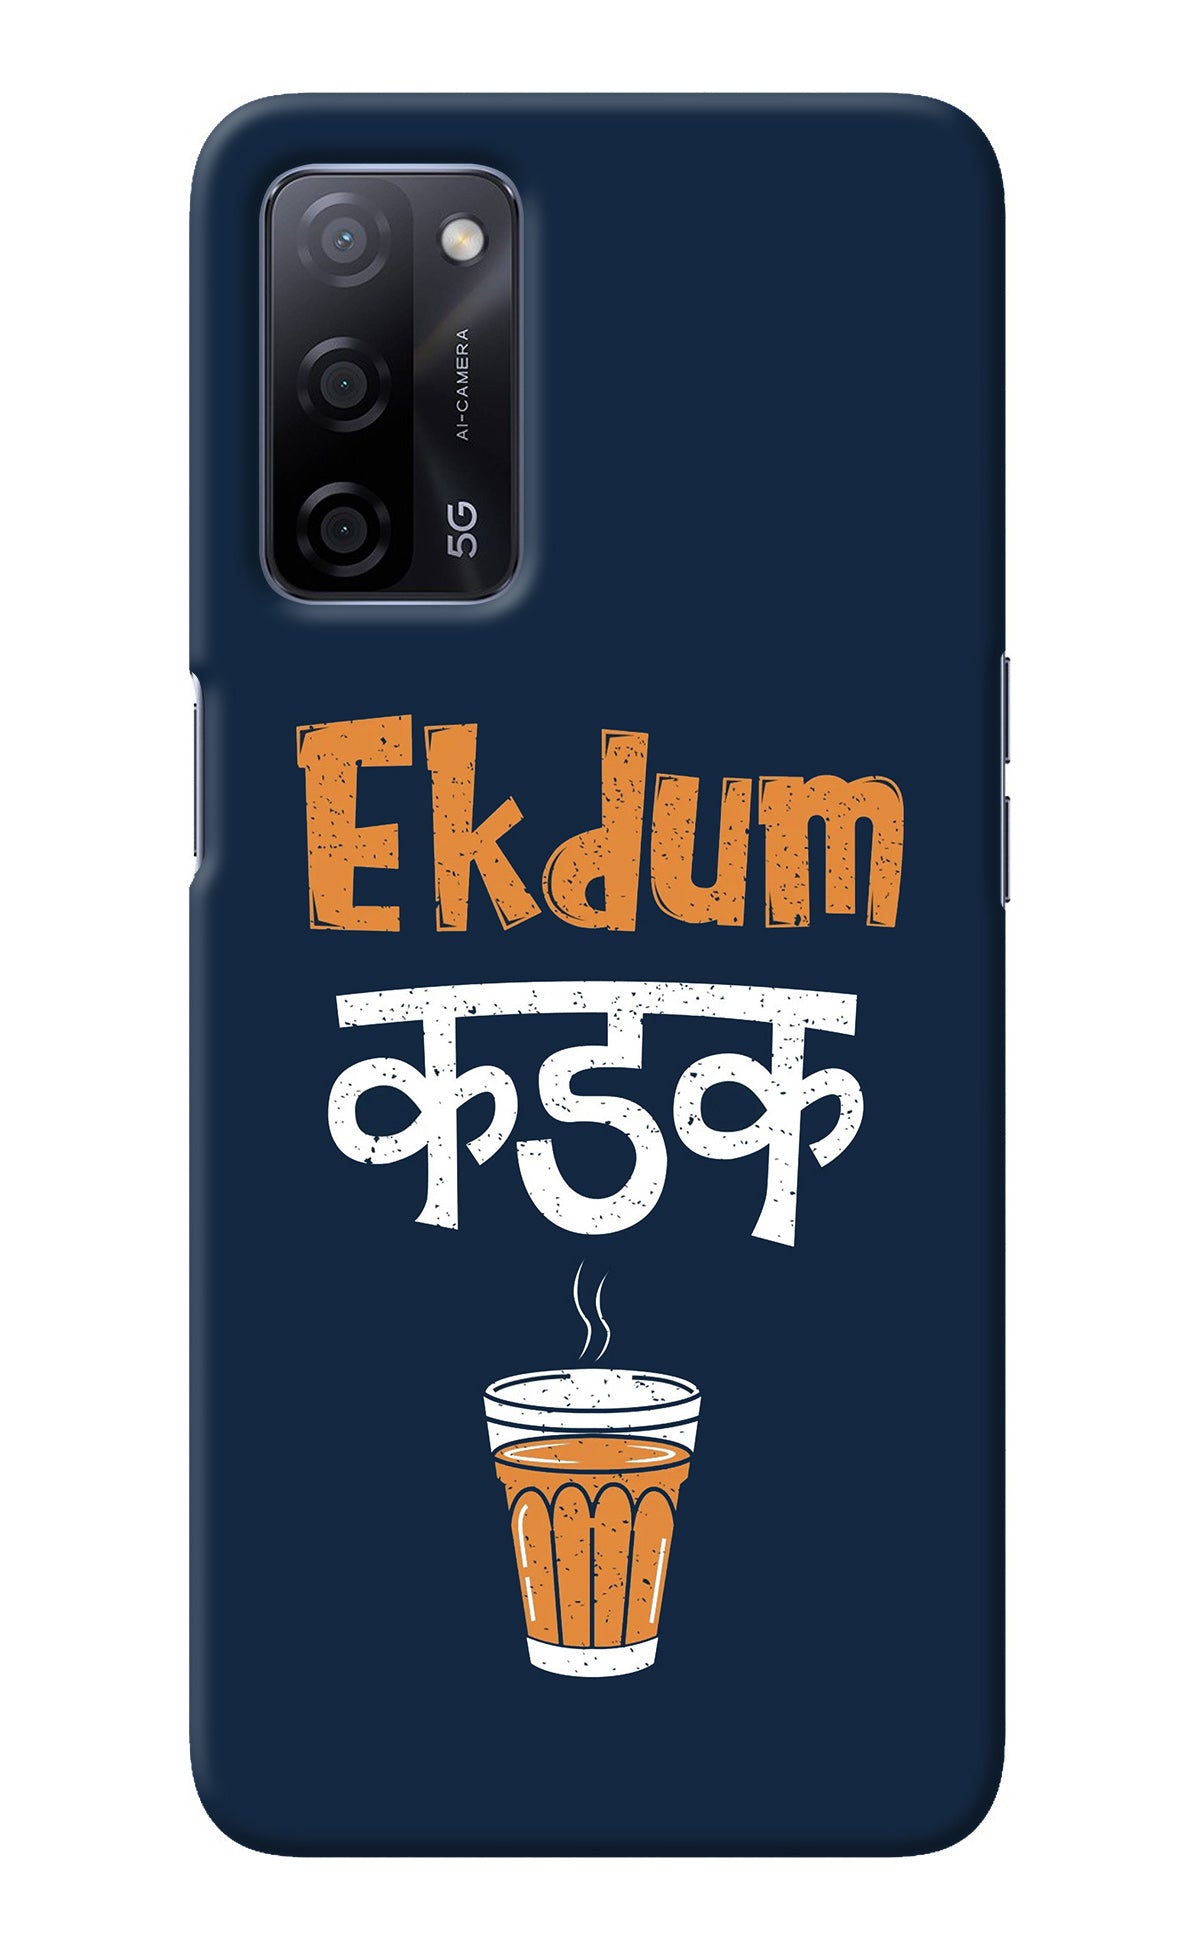 Ekdum Kadak Chai Oppo A53s 5G Back Cover